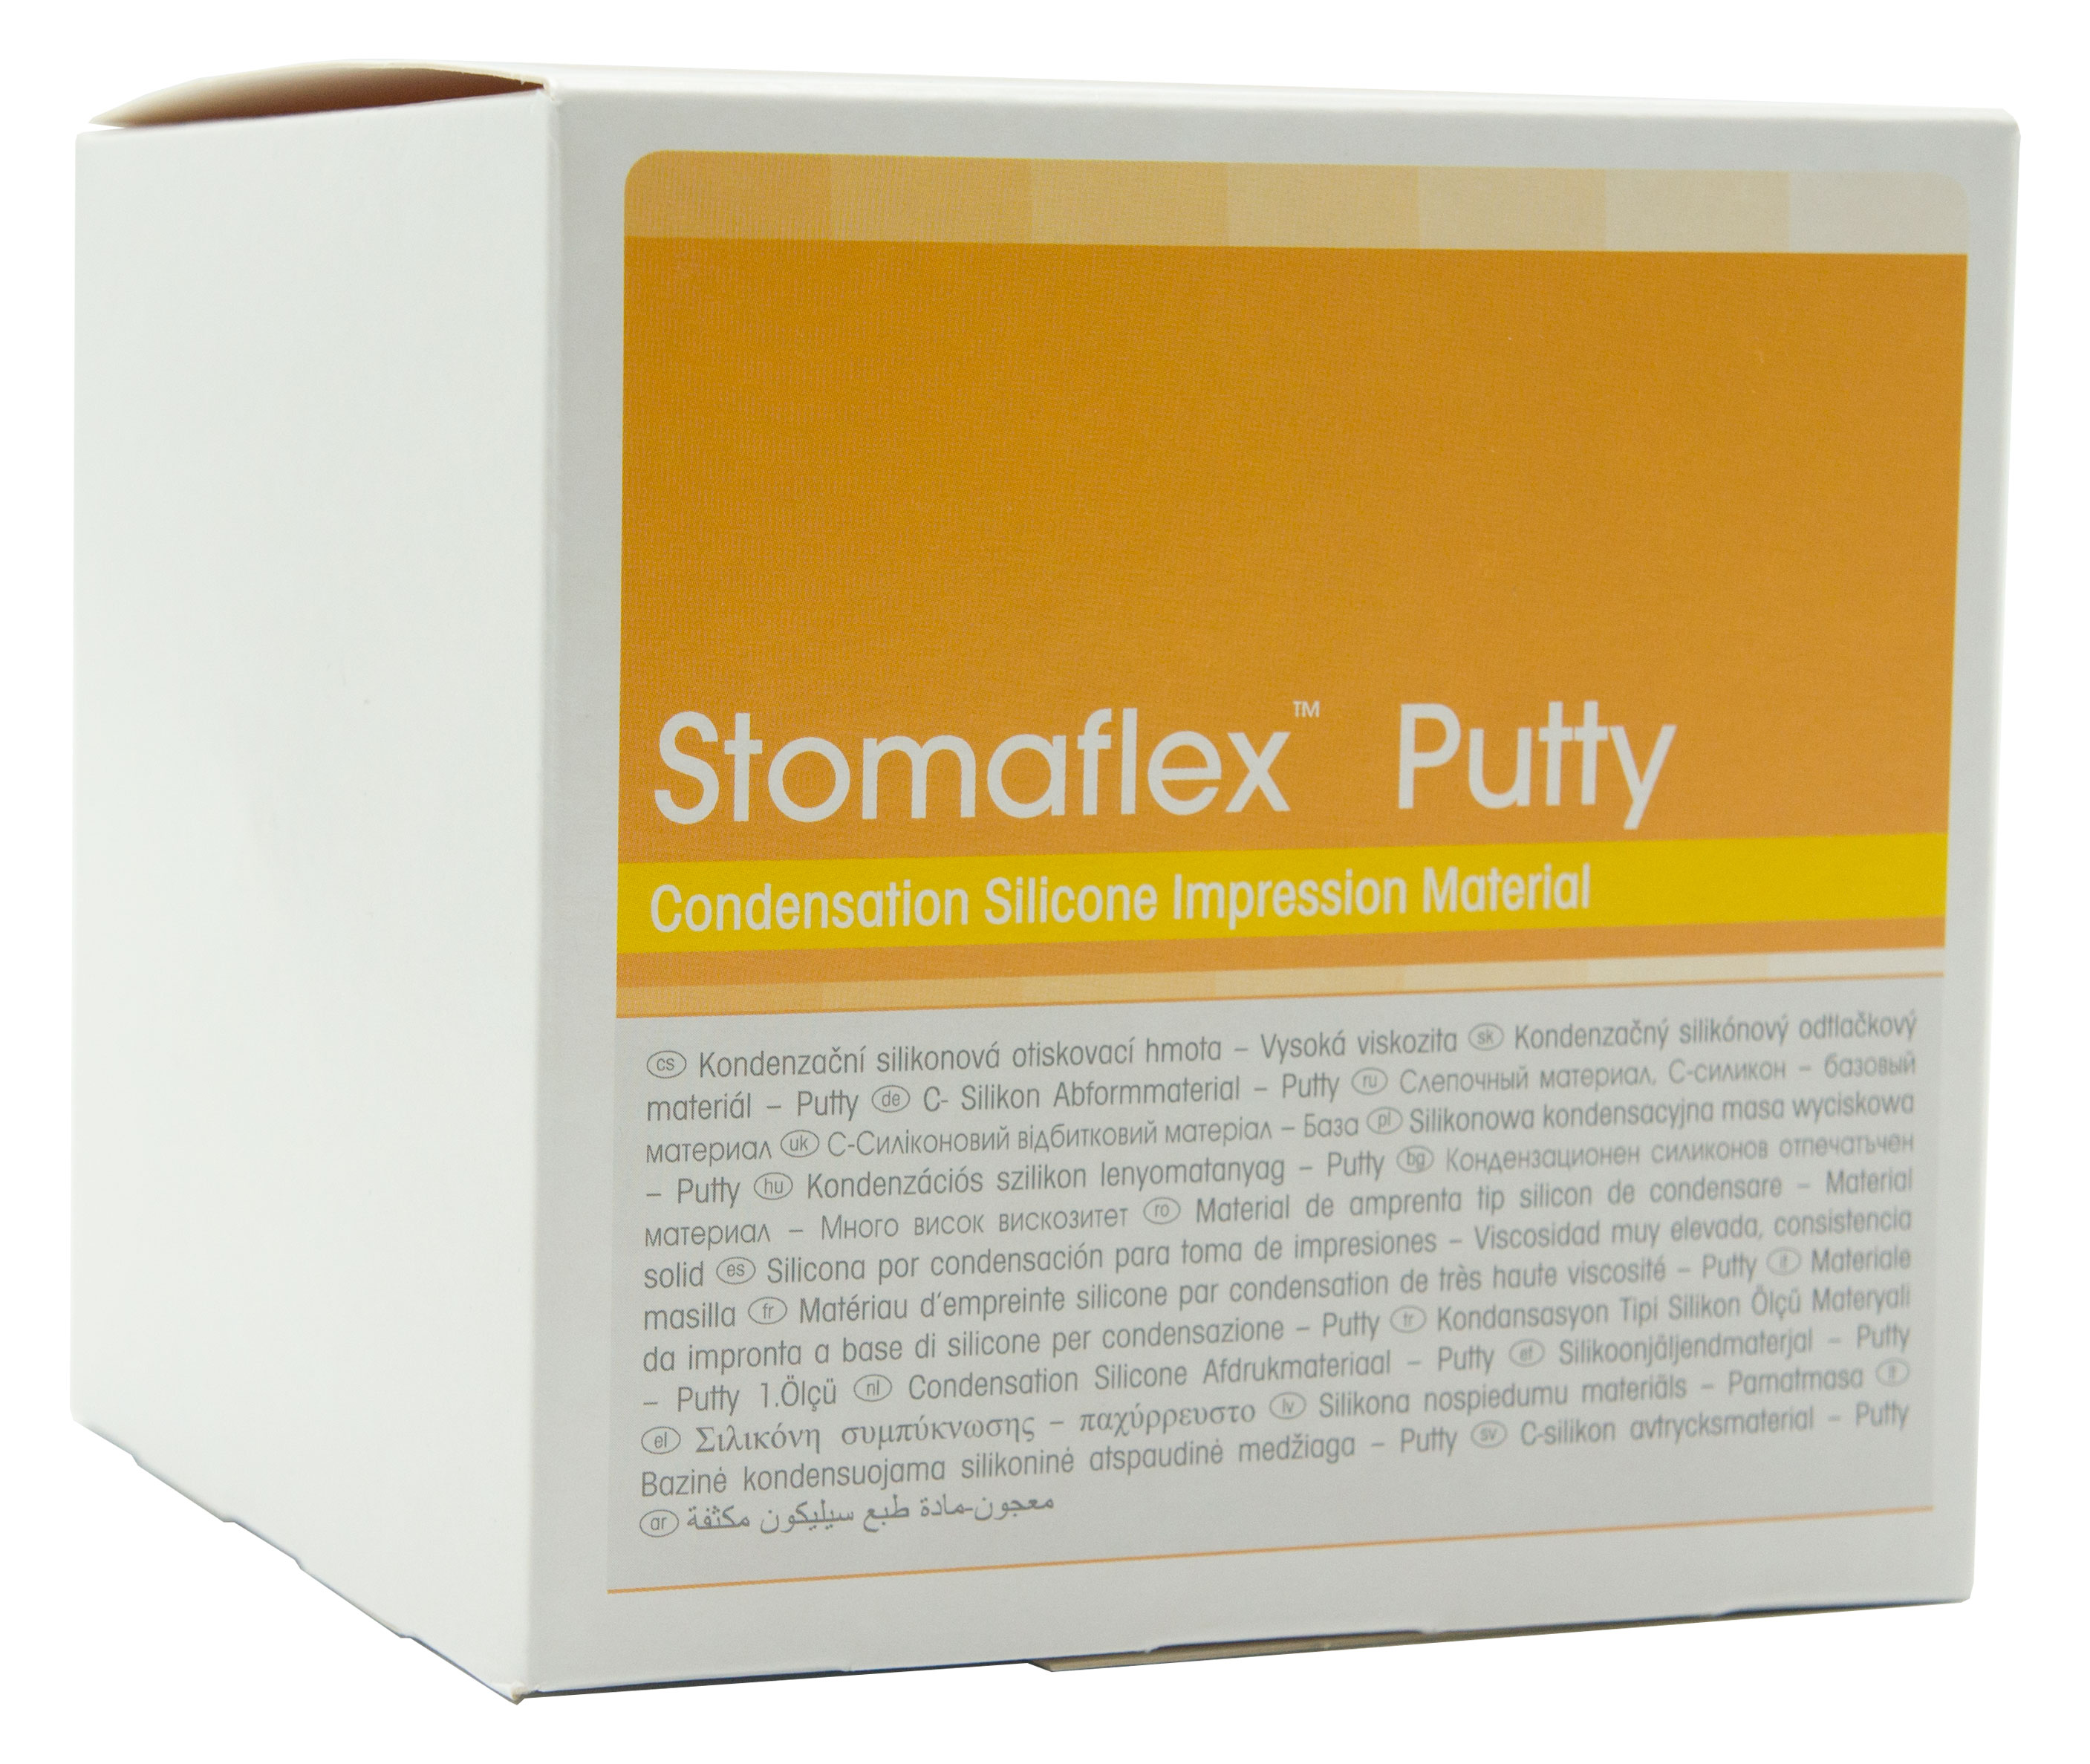 Stomaflex putty